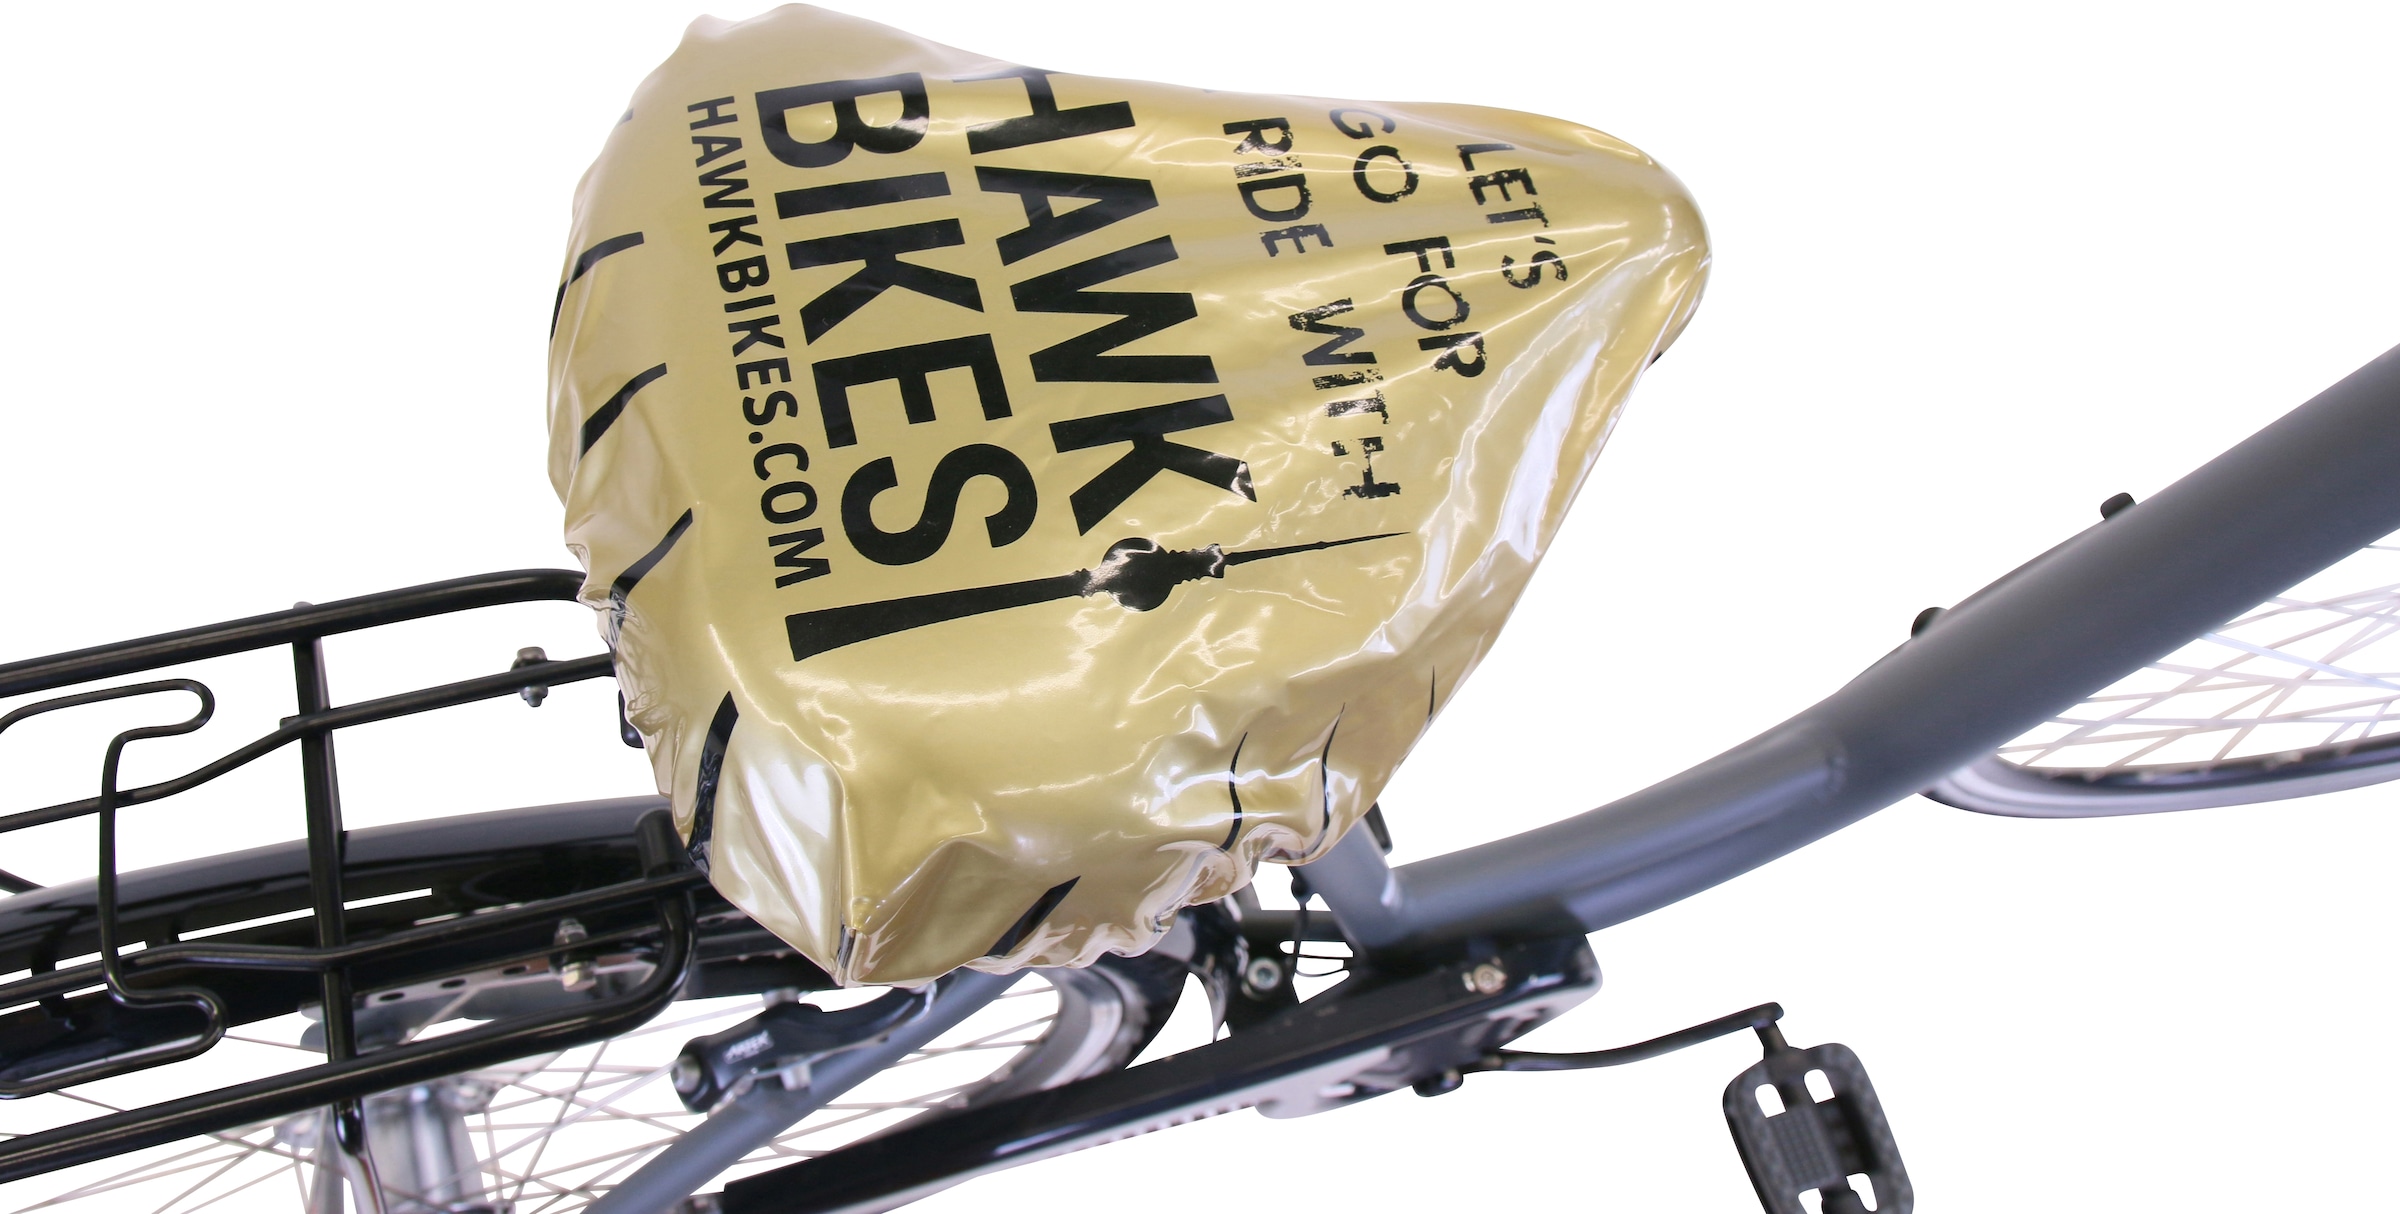 HAWK Bikes Cityrad »HAWK City Wave Deluxe Grey«, 7 Gang, Shimano, Nexus Schaltwerk, für Damen und Herren